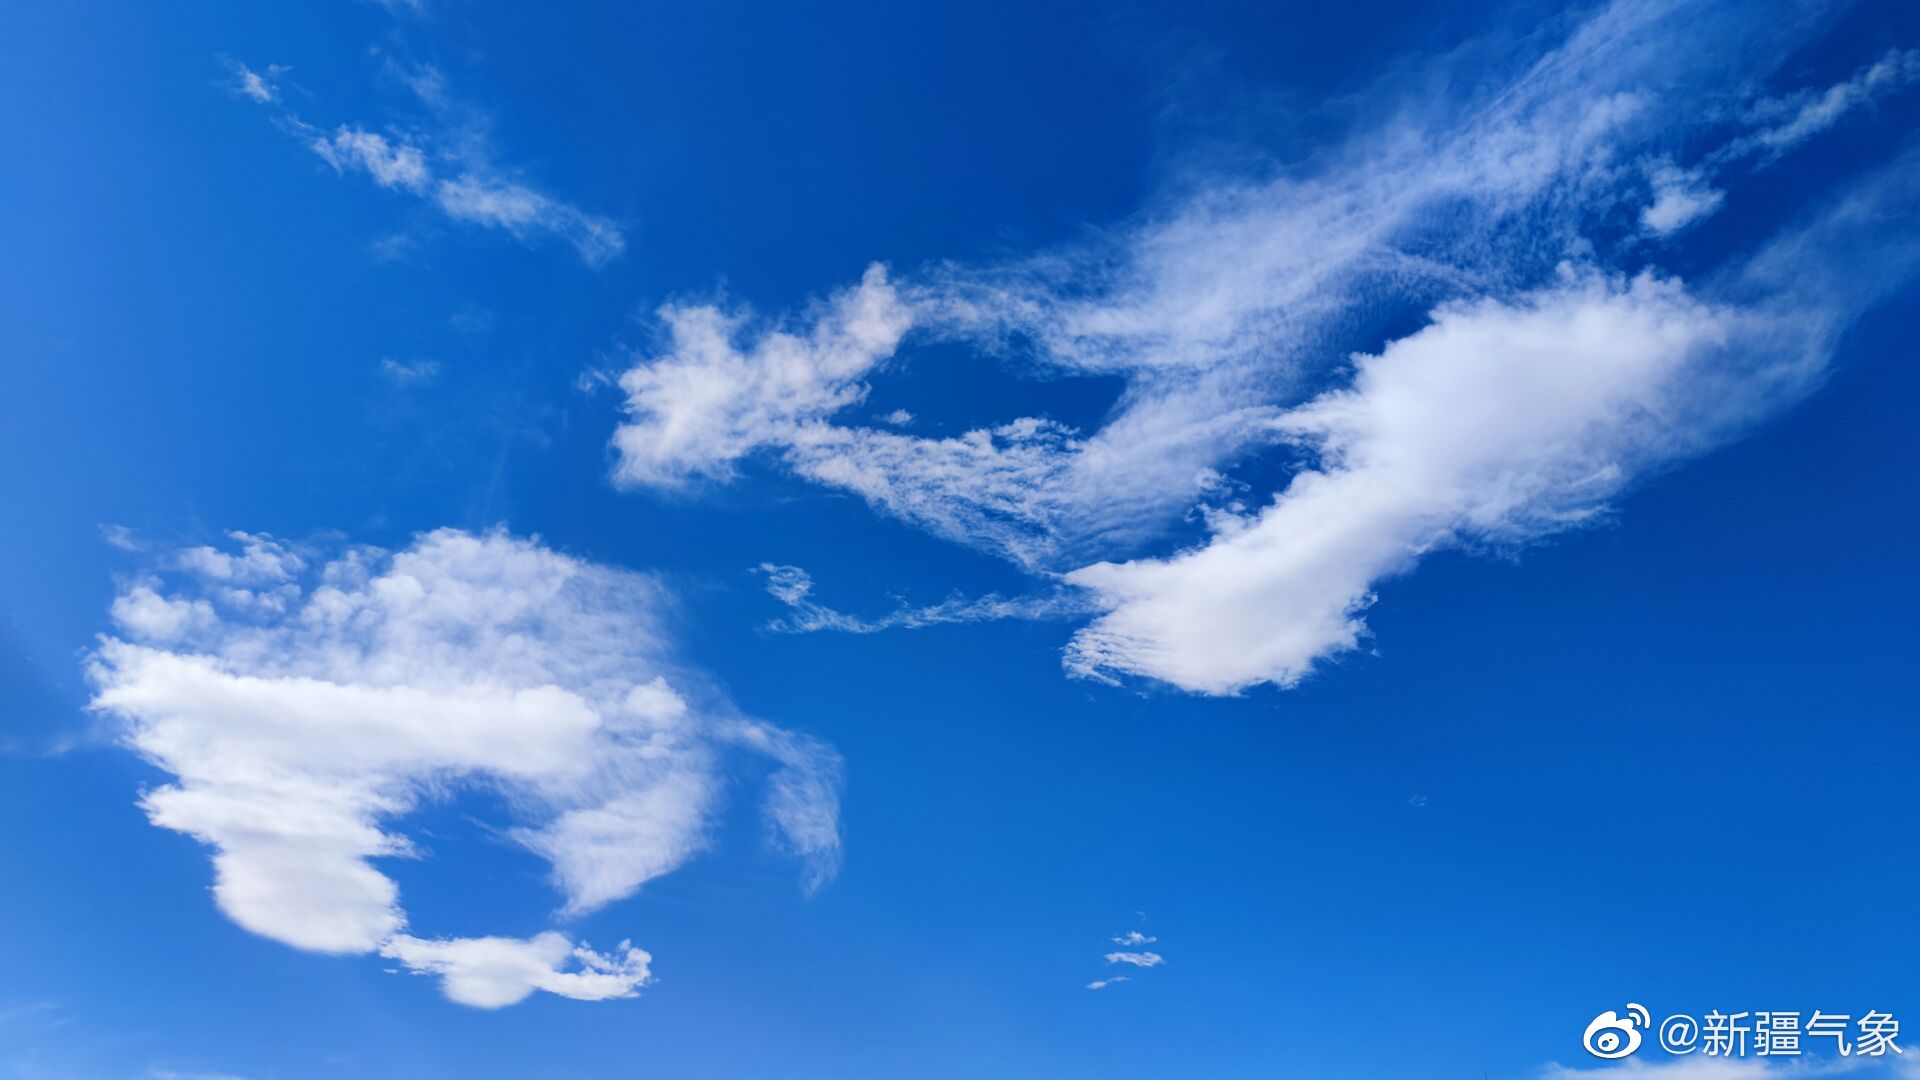 唯美天空云层图片壁纸(3) - 25H.NET壁纸库